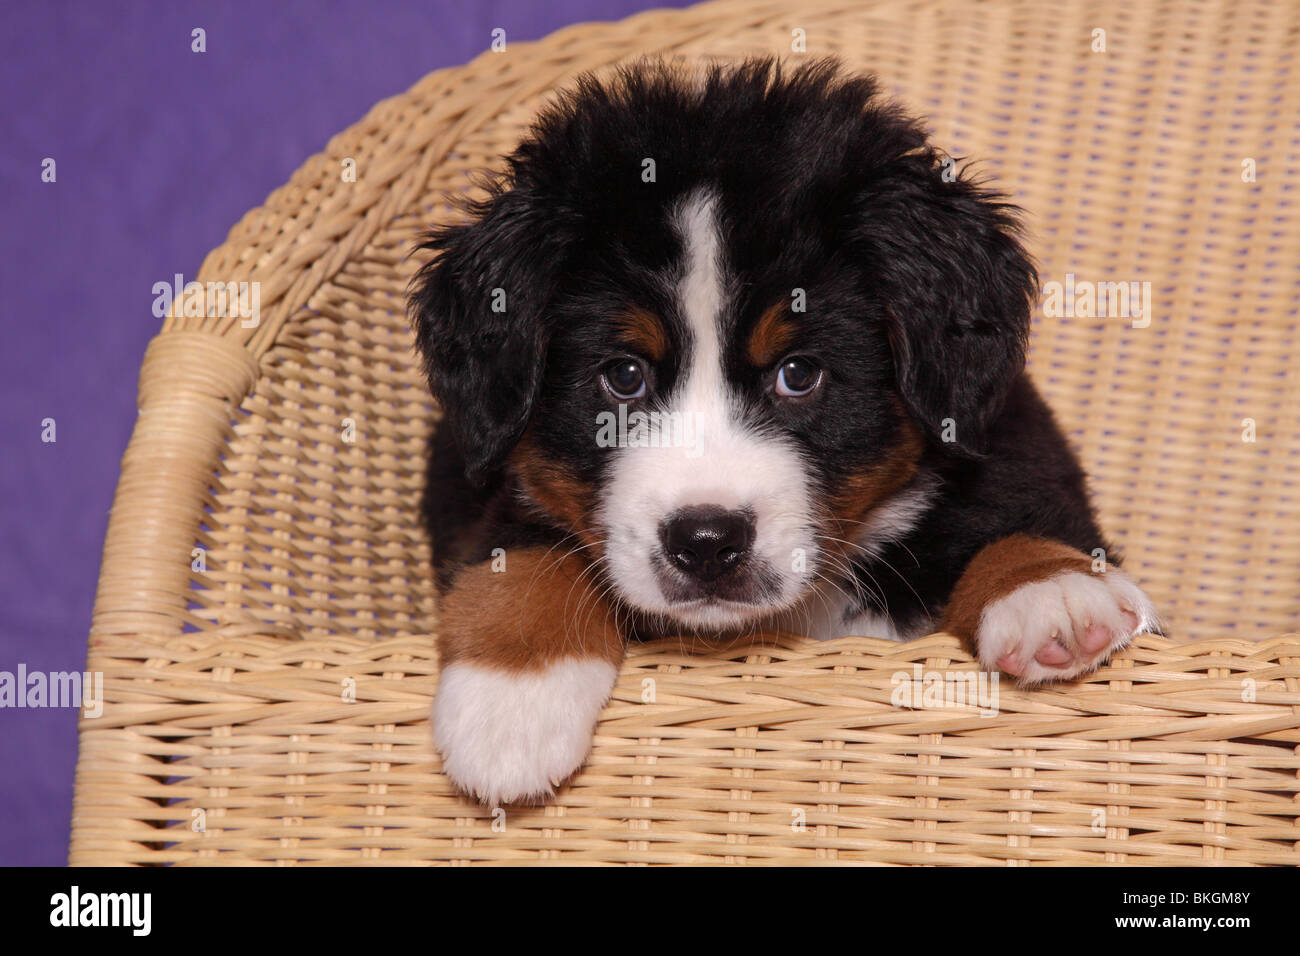 Großer Schweizer Sennenhund Welpe / Great Swiss Mountain Dog Puppy Stock  Photo - Alamy